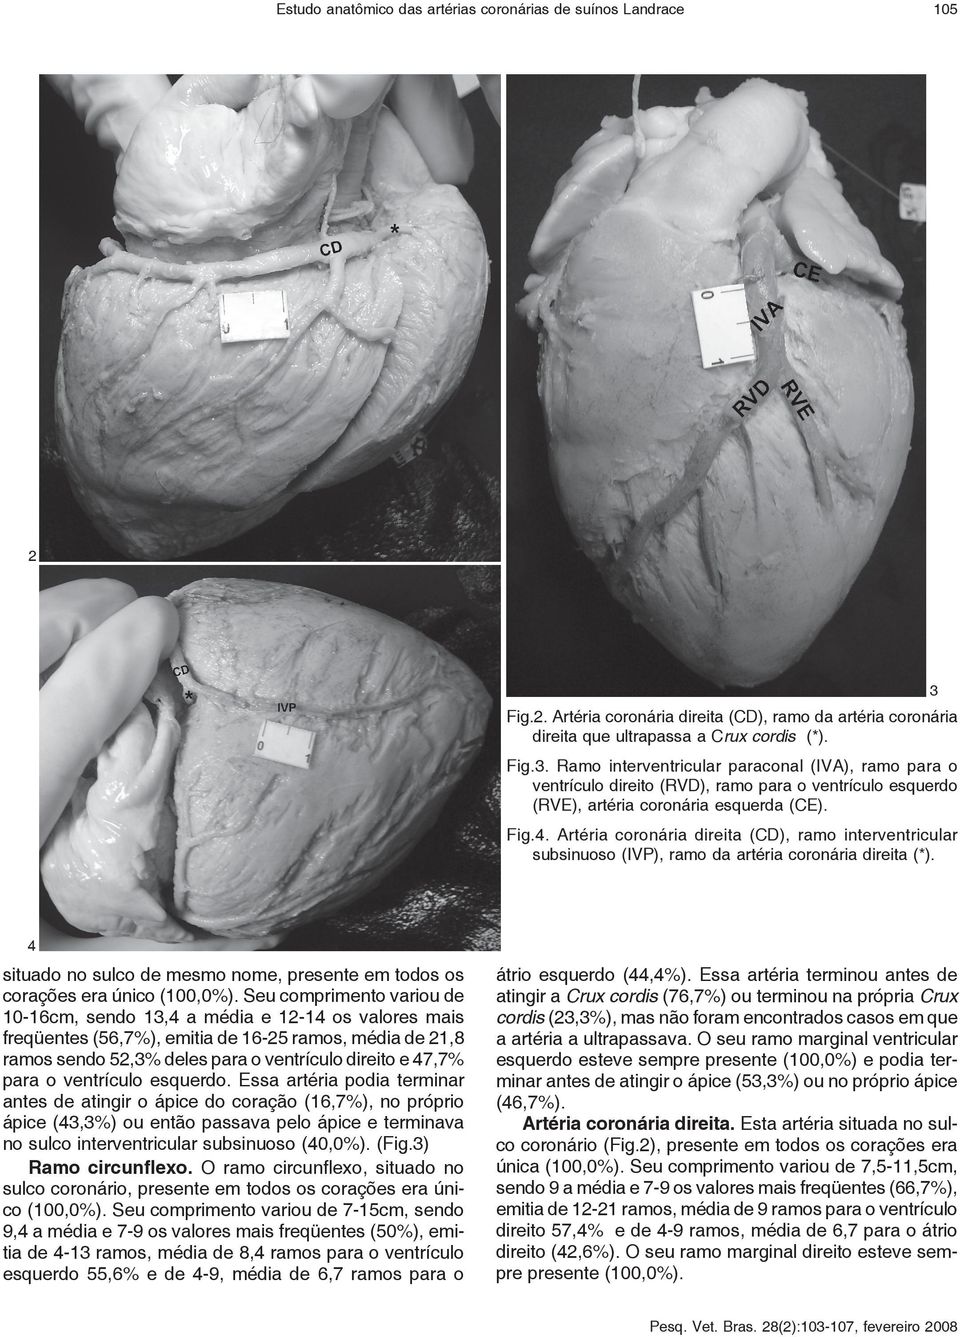 Ramo interventricular paraconal (IVA), ramo para o ventrículo direito (RVD), ramo para o ventrículo esquerdo (RVE), artéria coronária esquerda (CE). Fig.4.